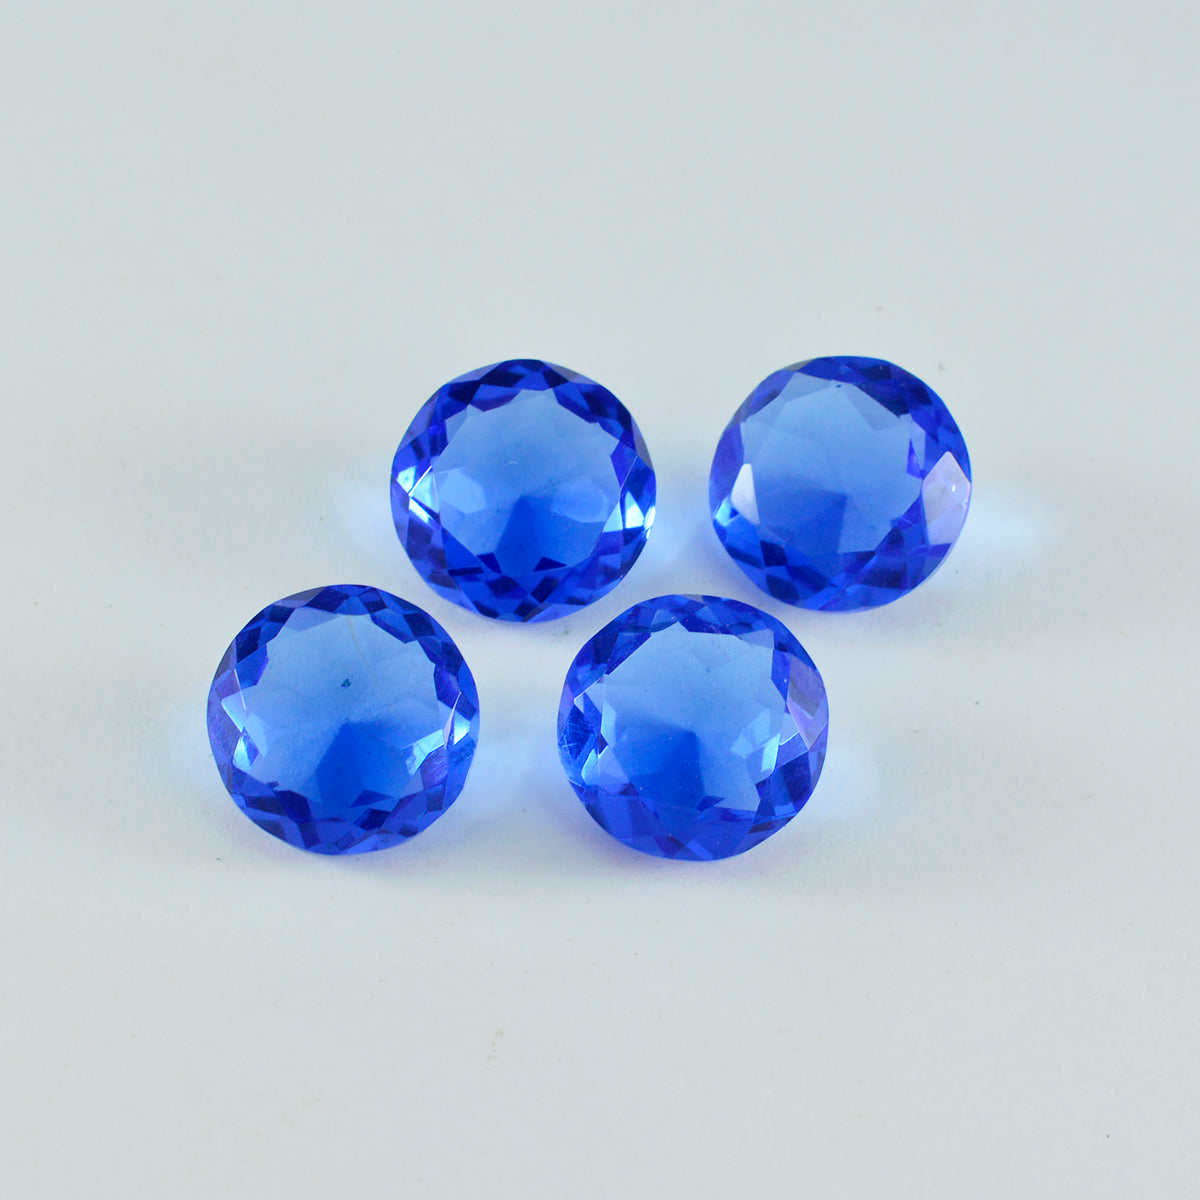 Riyogems 1 Stück blauer Saphir, CZ, facettiert, 15 x 15 mm, runde Form, A+-Qualität, loser Edelstein